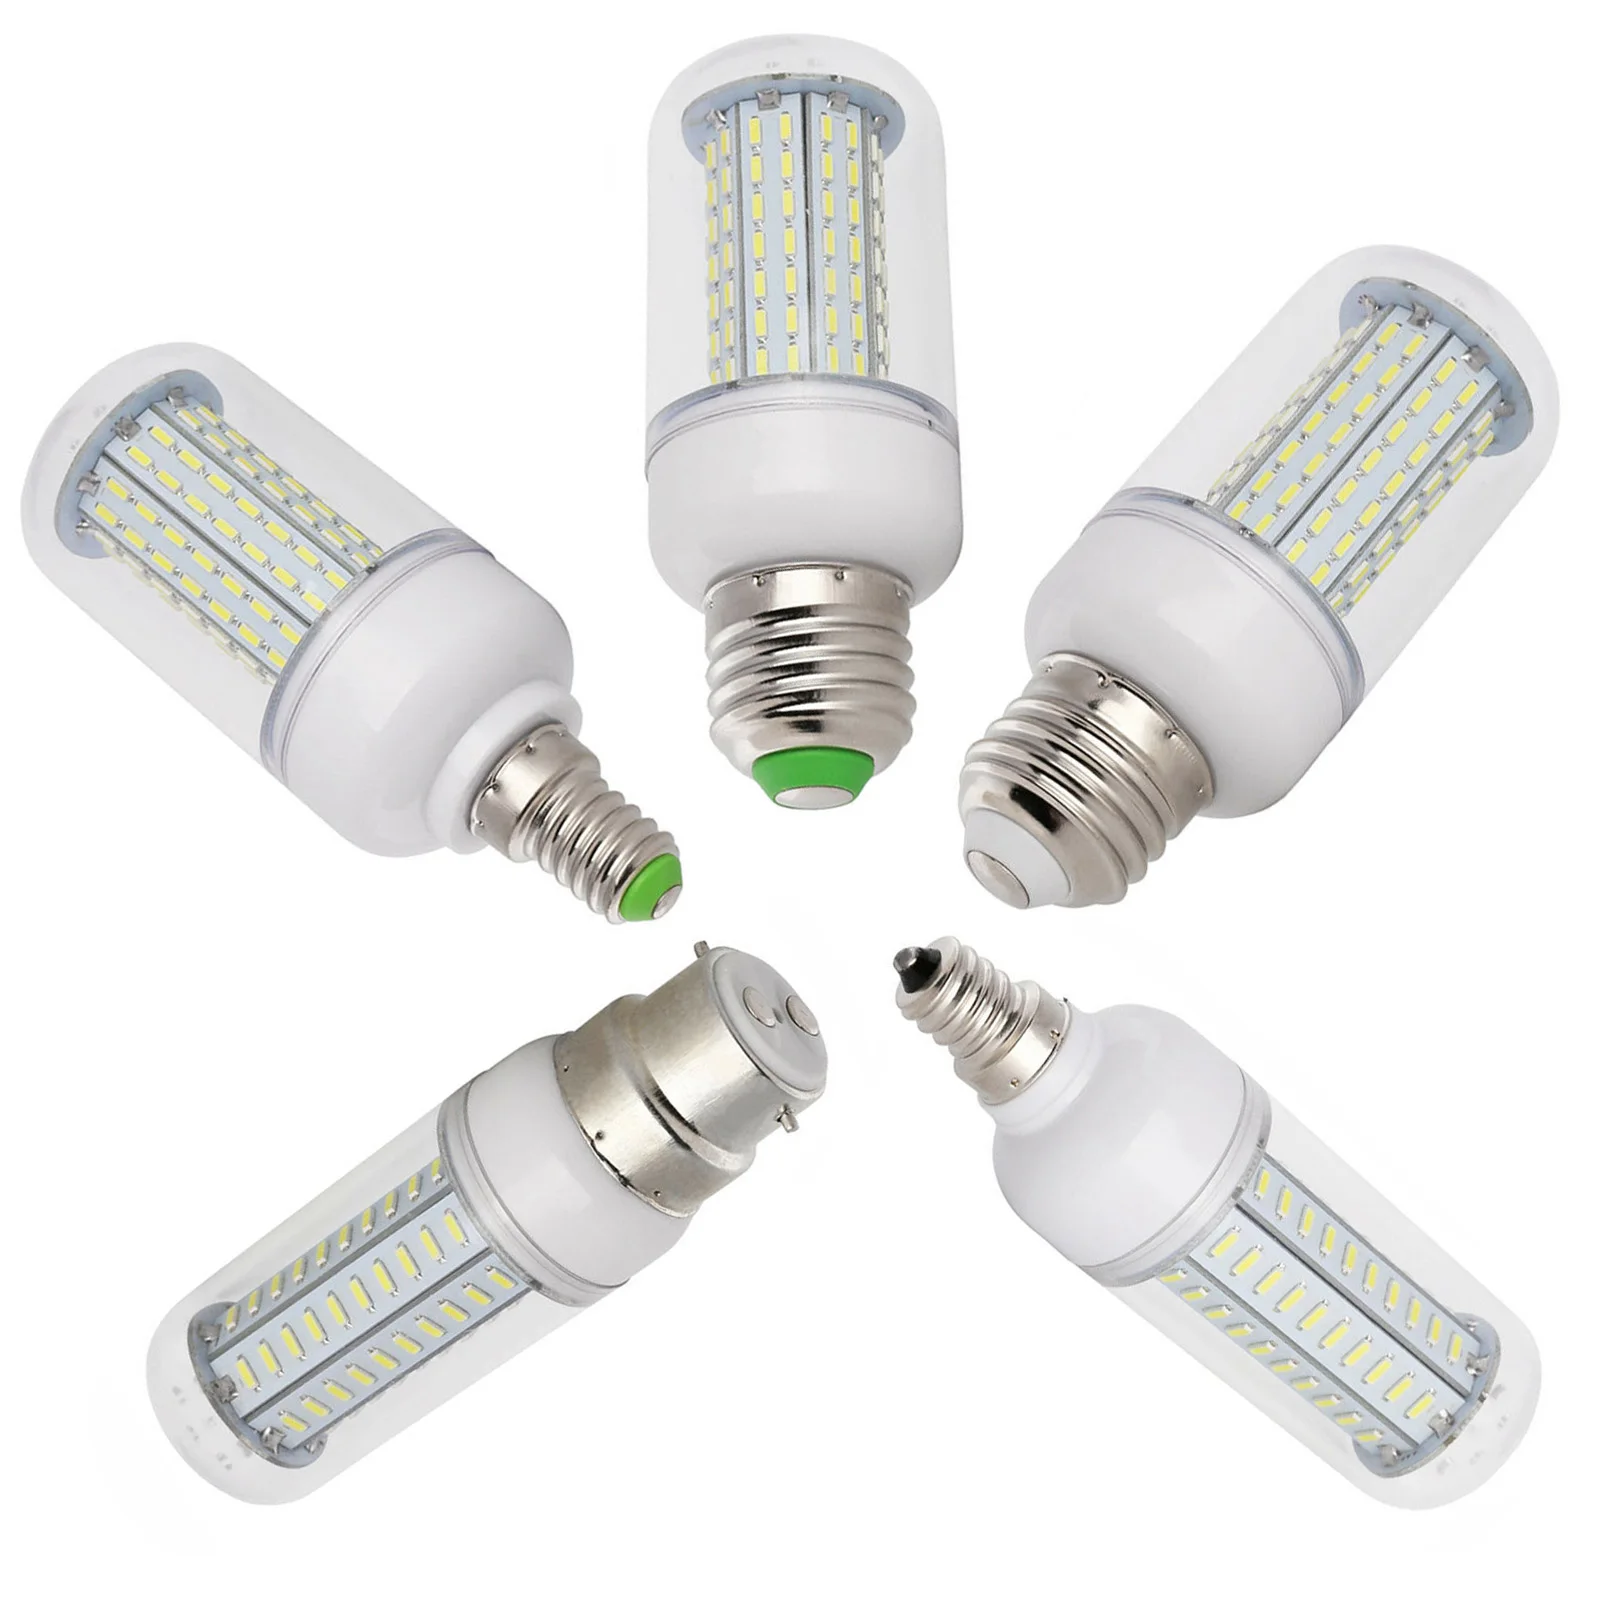 

Dimmable LED Bulb Corn Light E26 E27 E12 E14 12W 14W 15W 18W 20W 4014 SMD Lamp 110V 220V 36 80 96LEDs Replace Halogen Ampoule